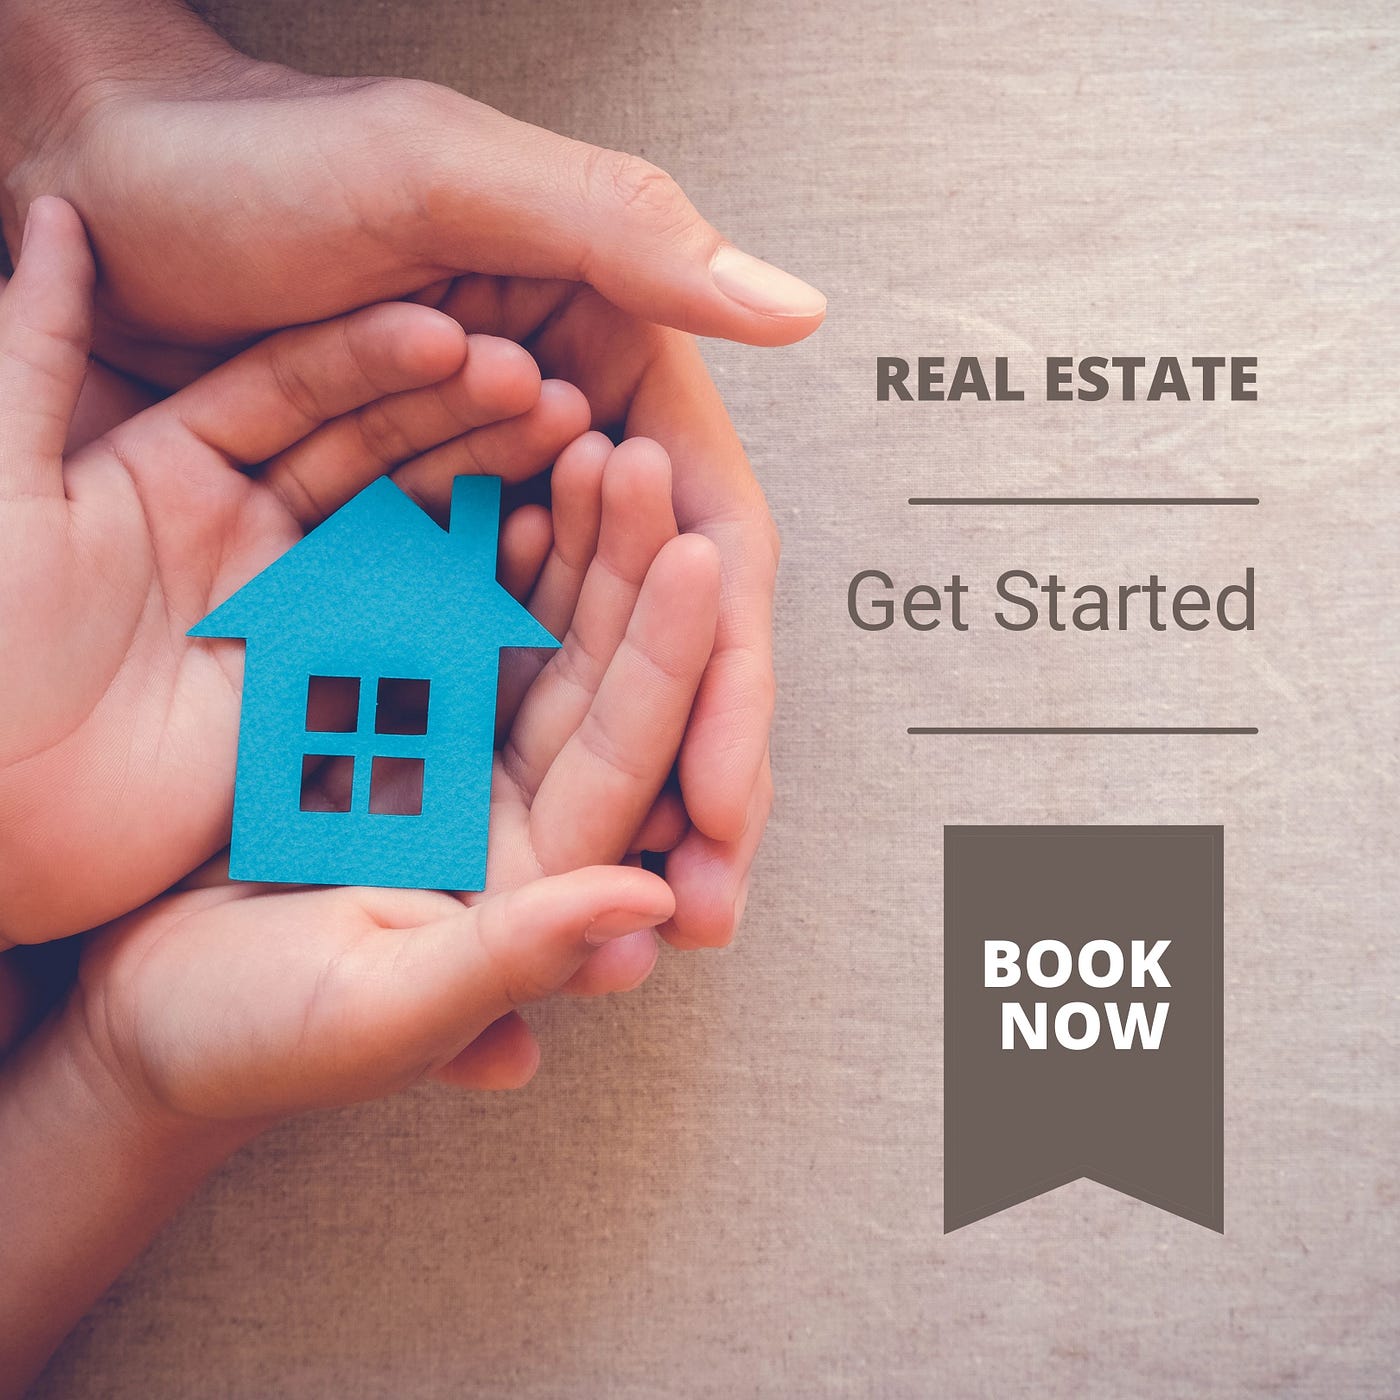 Get Started Investing in Digital Real Estate